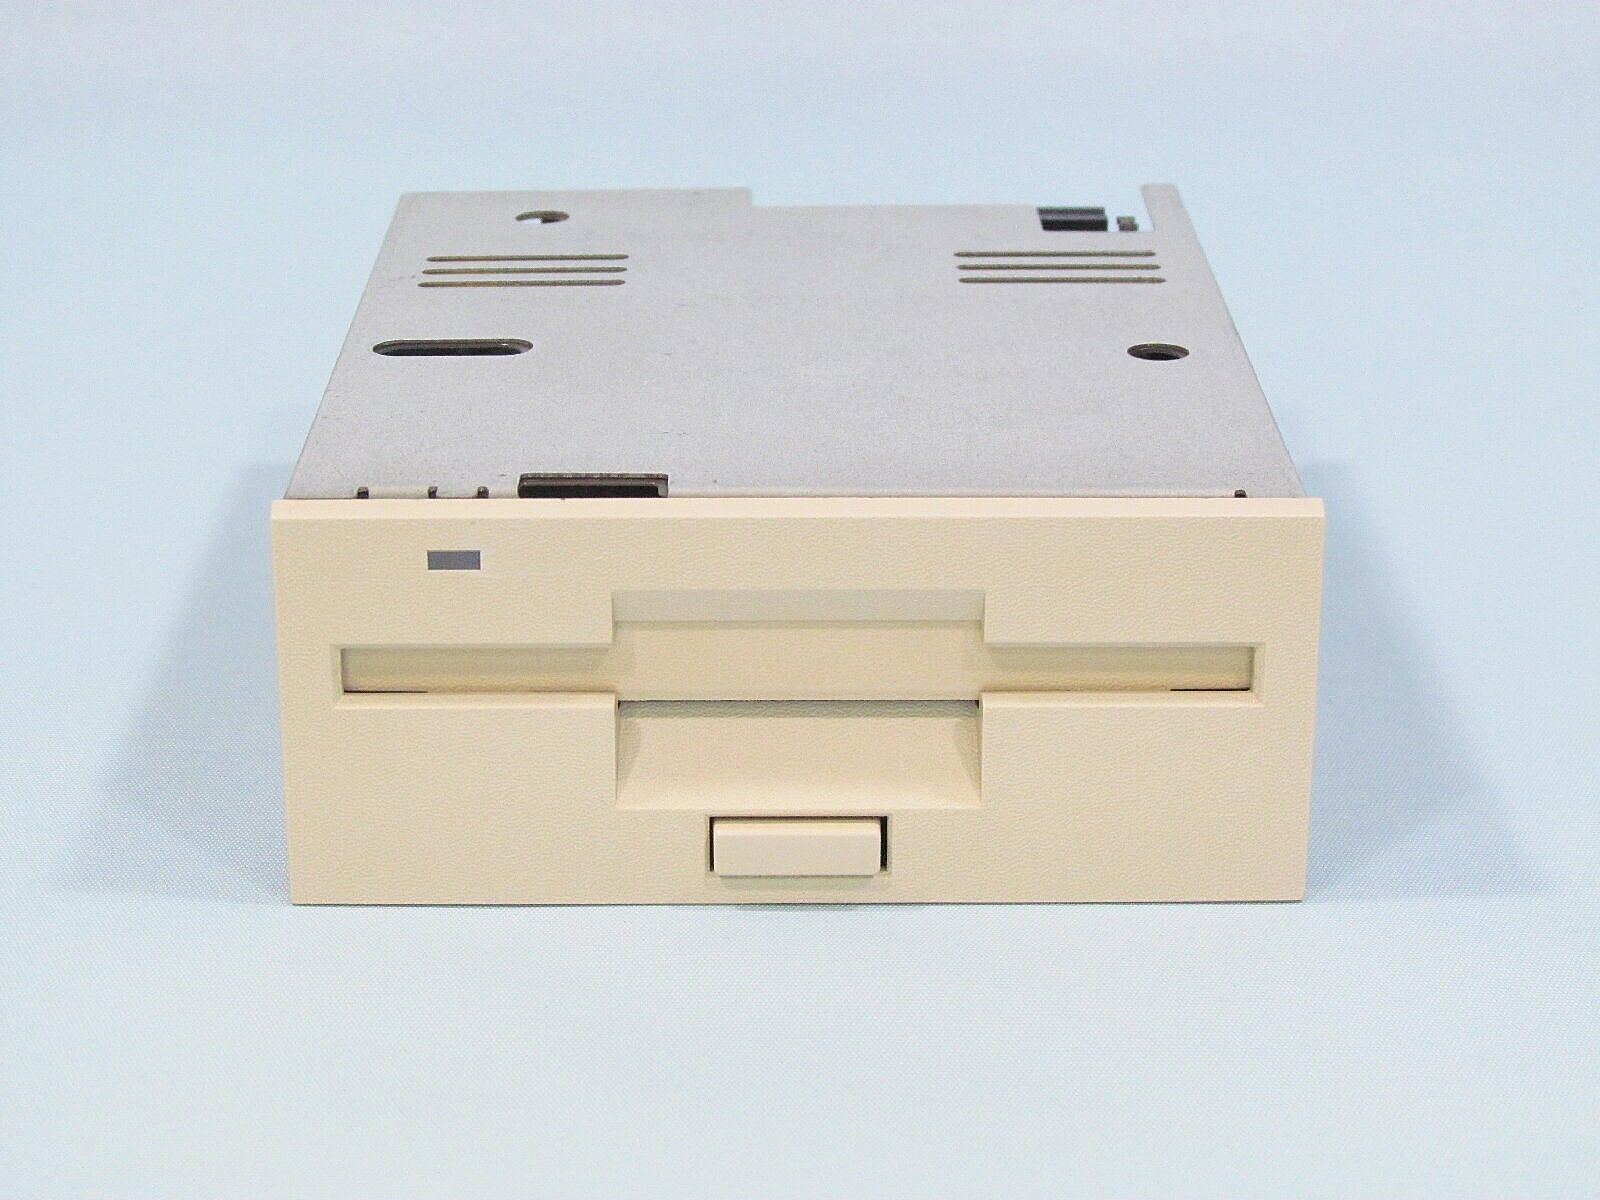 ⭕NEC FDD FD1135D for PC-9801UV2 & 21 Sodick EDM EX21 A280~A750 with Manual